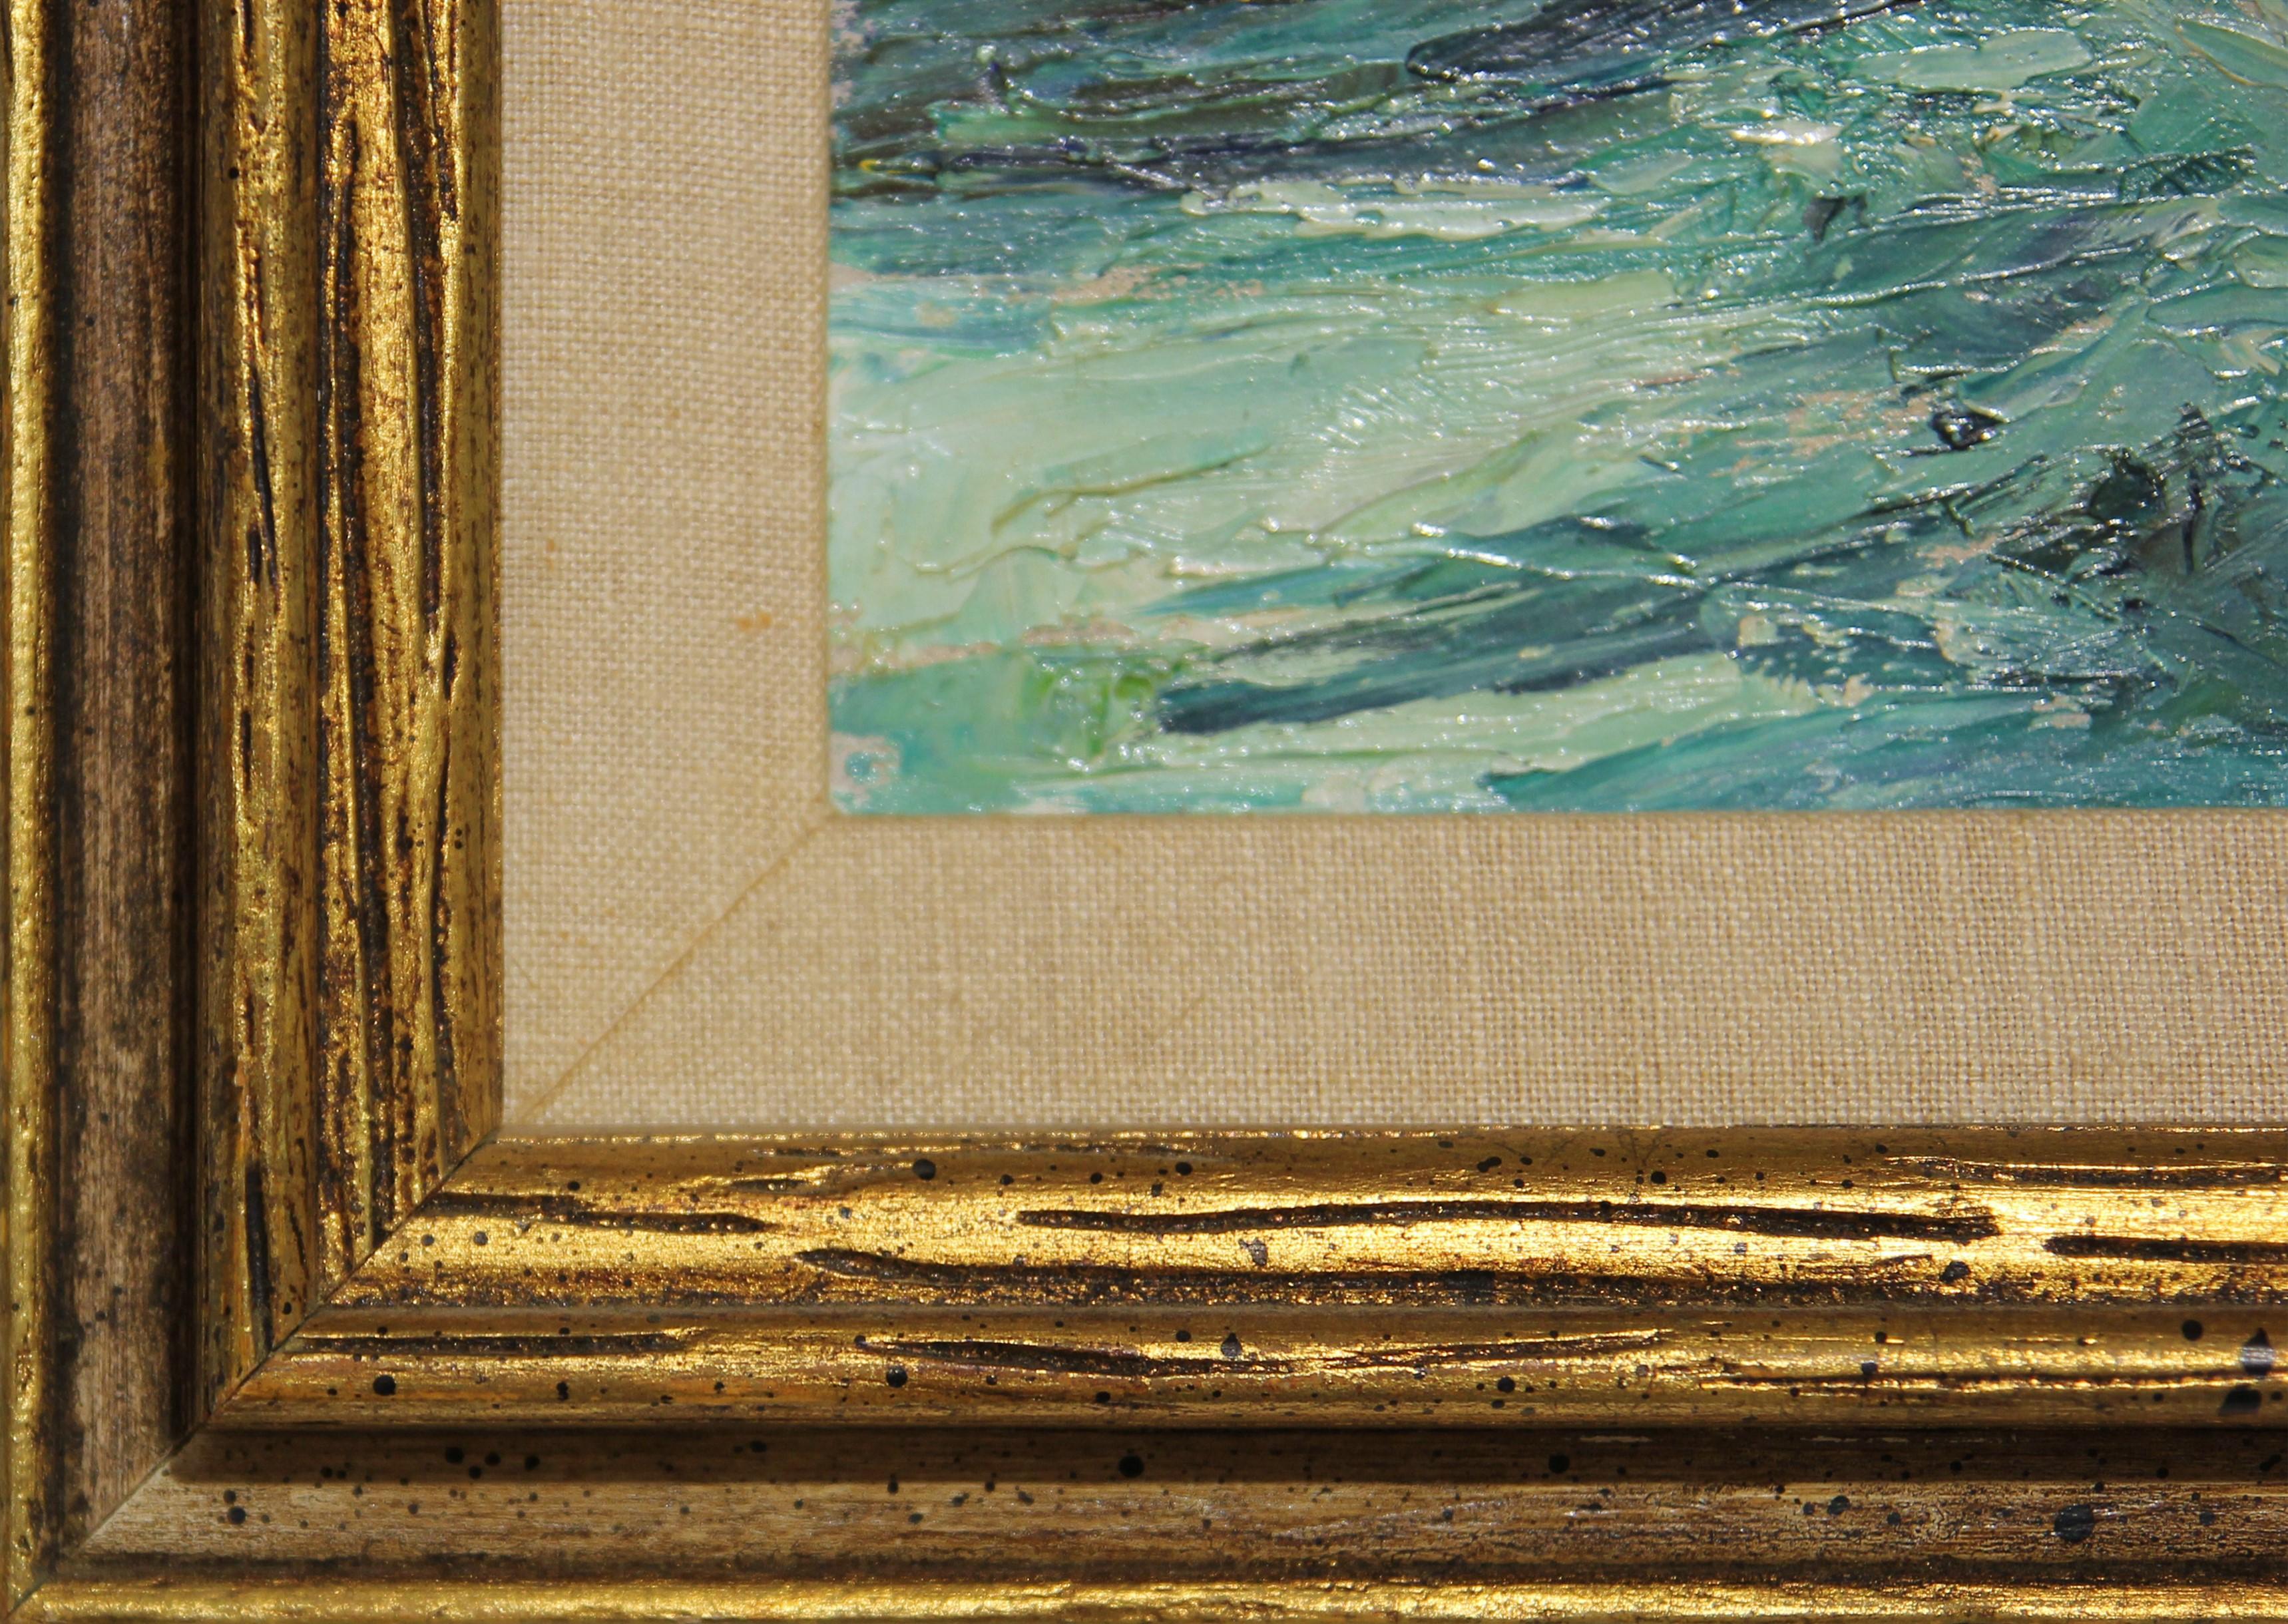 Impressionistische Landschaft des Künstlers und Illustrators Charles Dixon Snowden aus Houston, Texas. Blau getönte Seelandschaft mit dunklen Meereswellen und drei Fischern auf einem kleinen Holzboot. Signiert vom Künstler in der rechten unteren